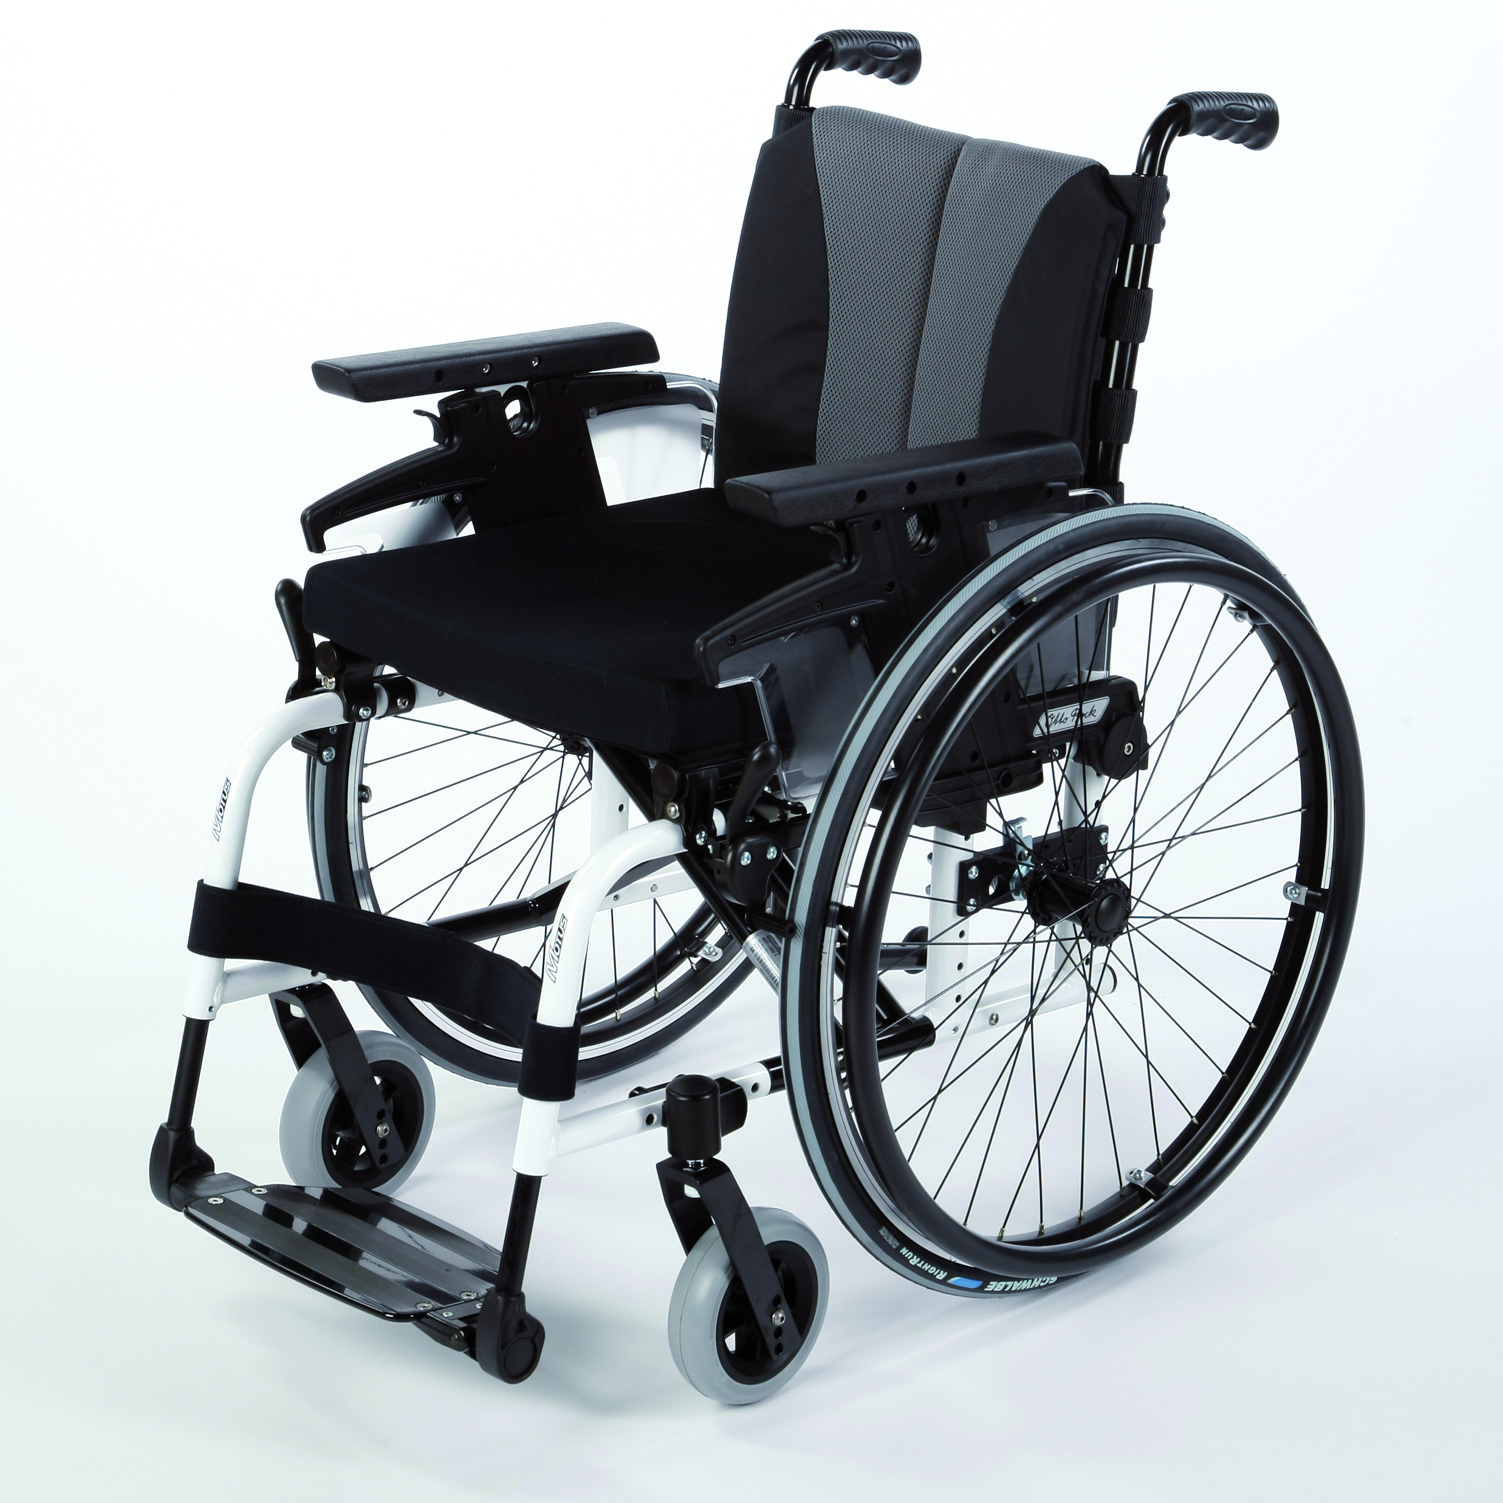 Ottobock wheelchair